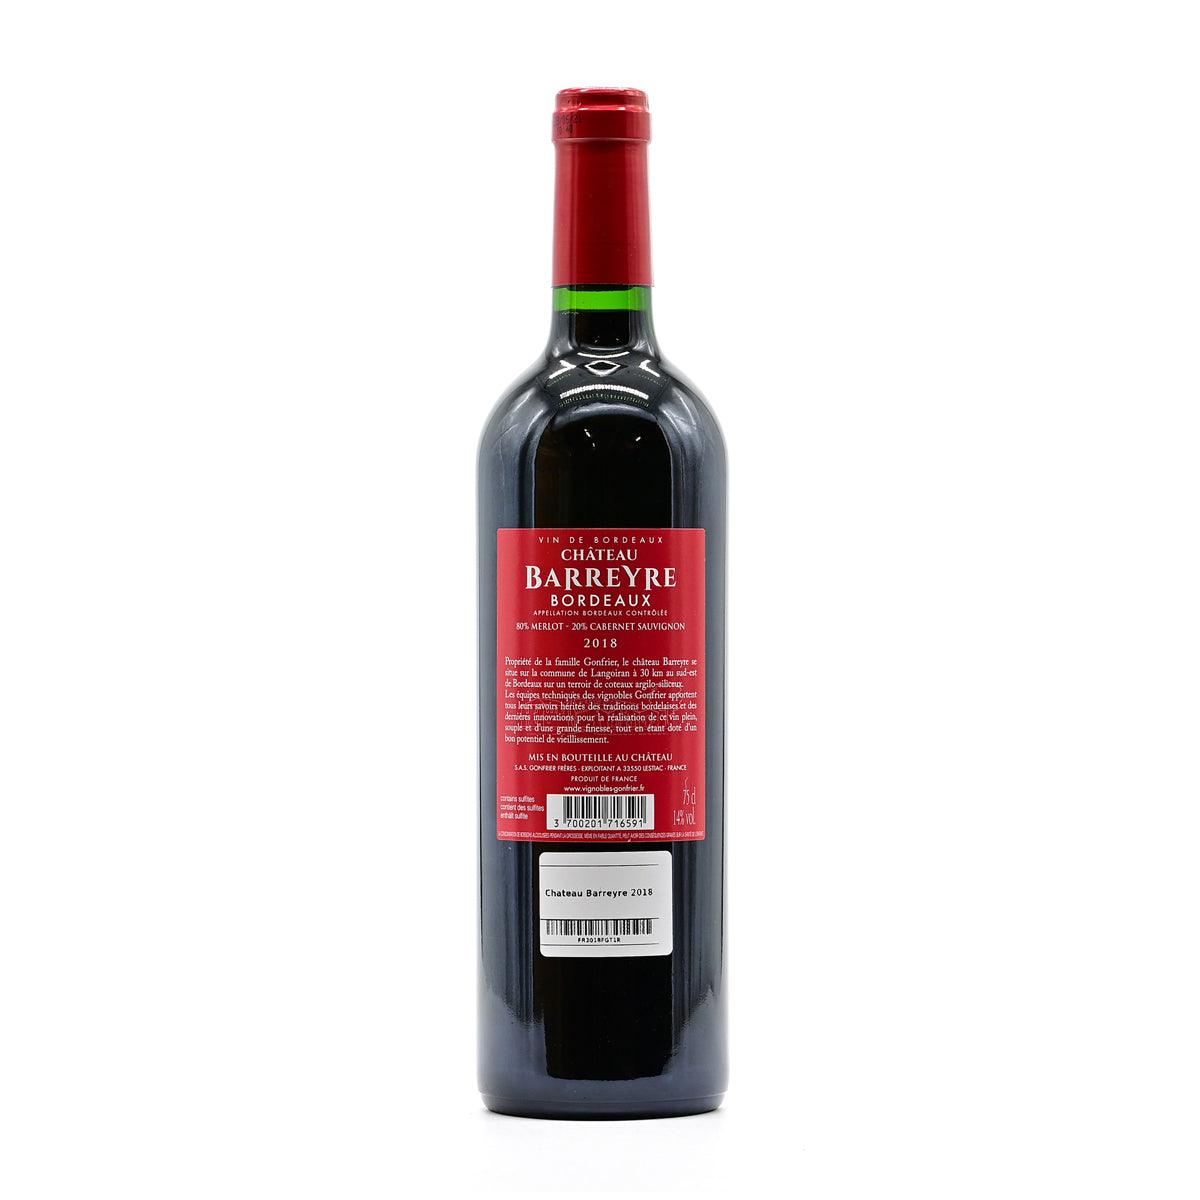 Chateau Barreyre 2018 - Red Wine - GDV Fine Wines® - 2018, 750ml, Bordeaux, Chateau Barreyre, France, JS90, Red Wine, Wine Product